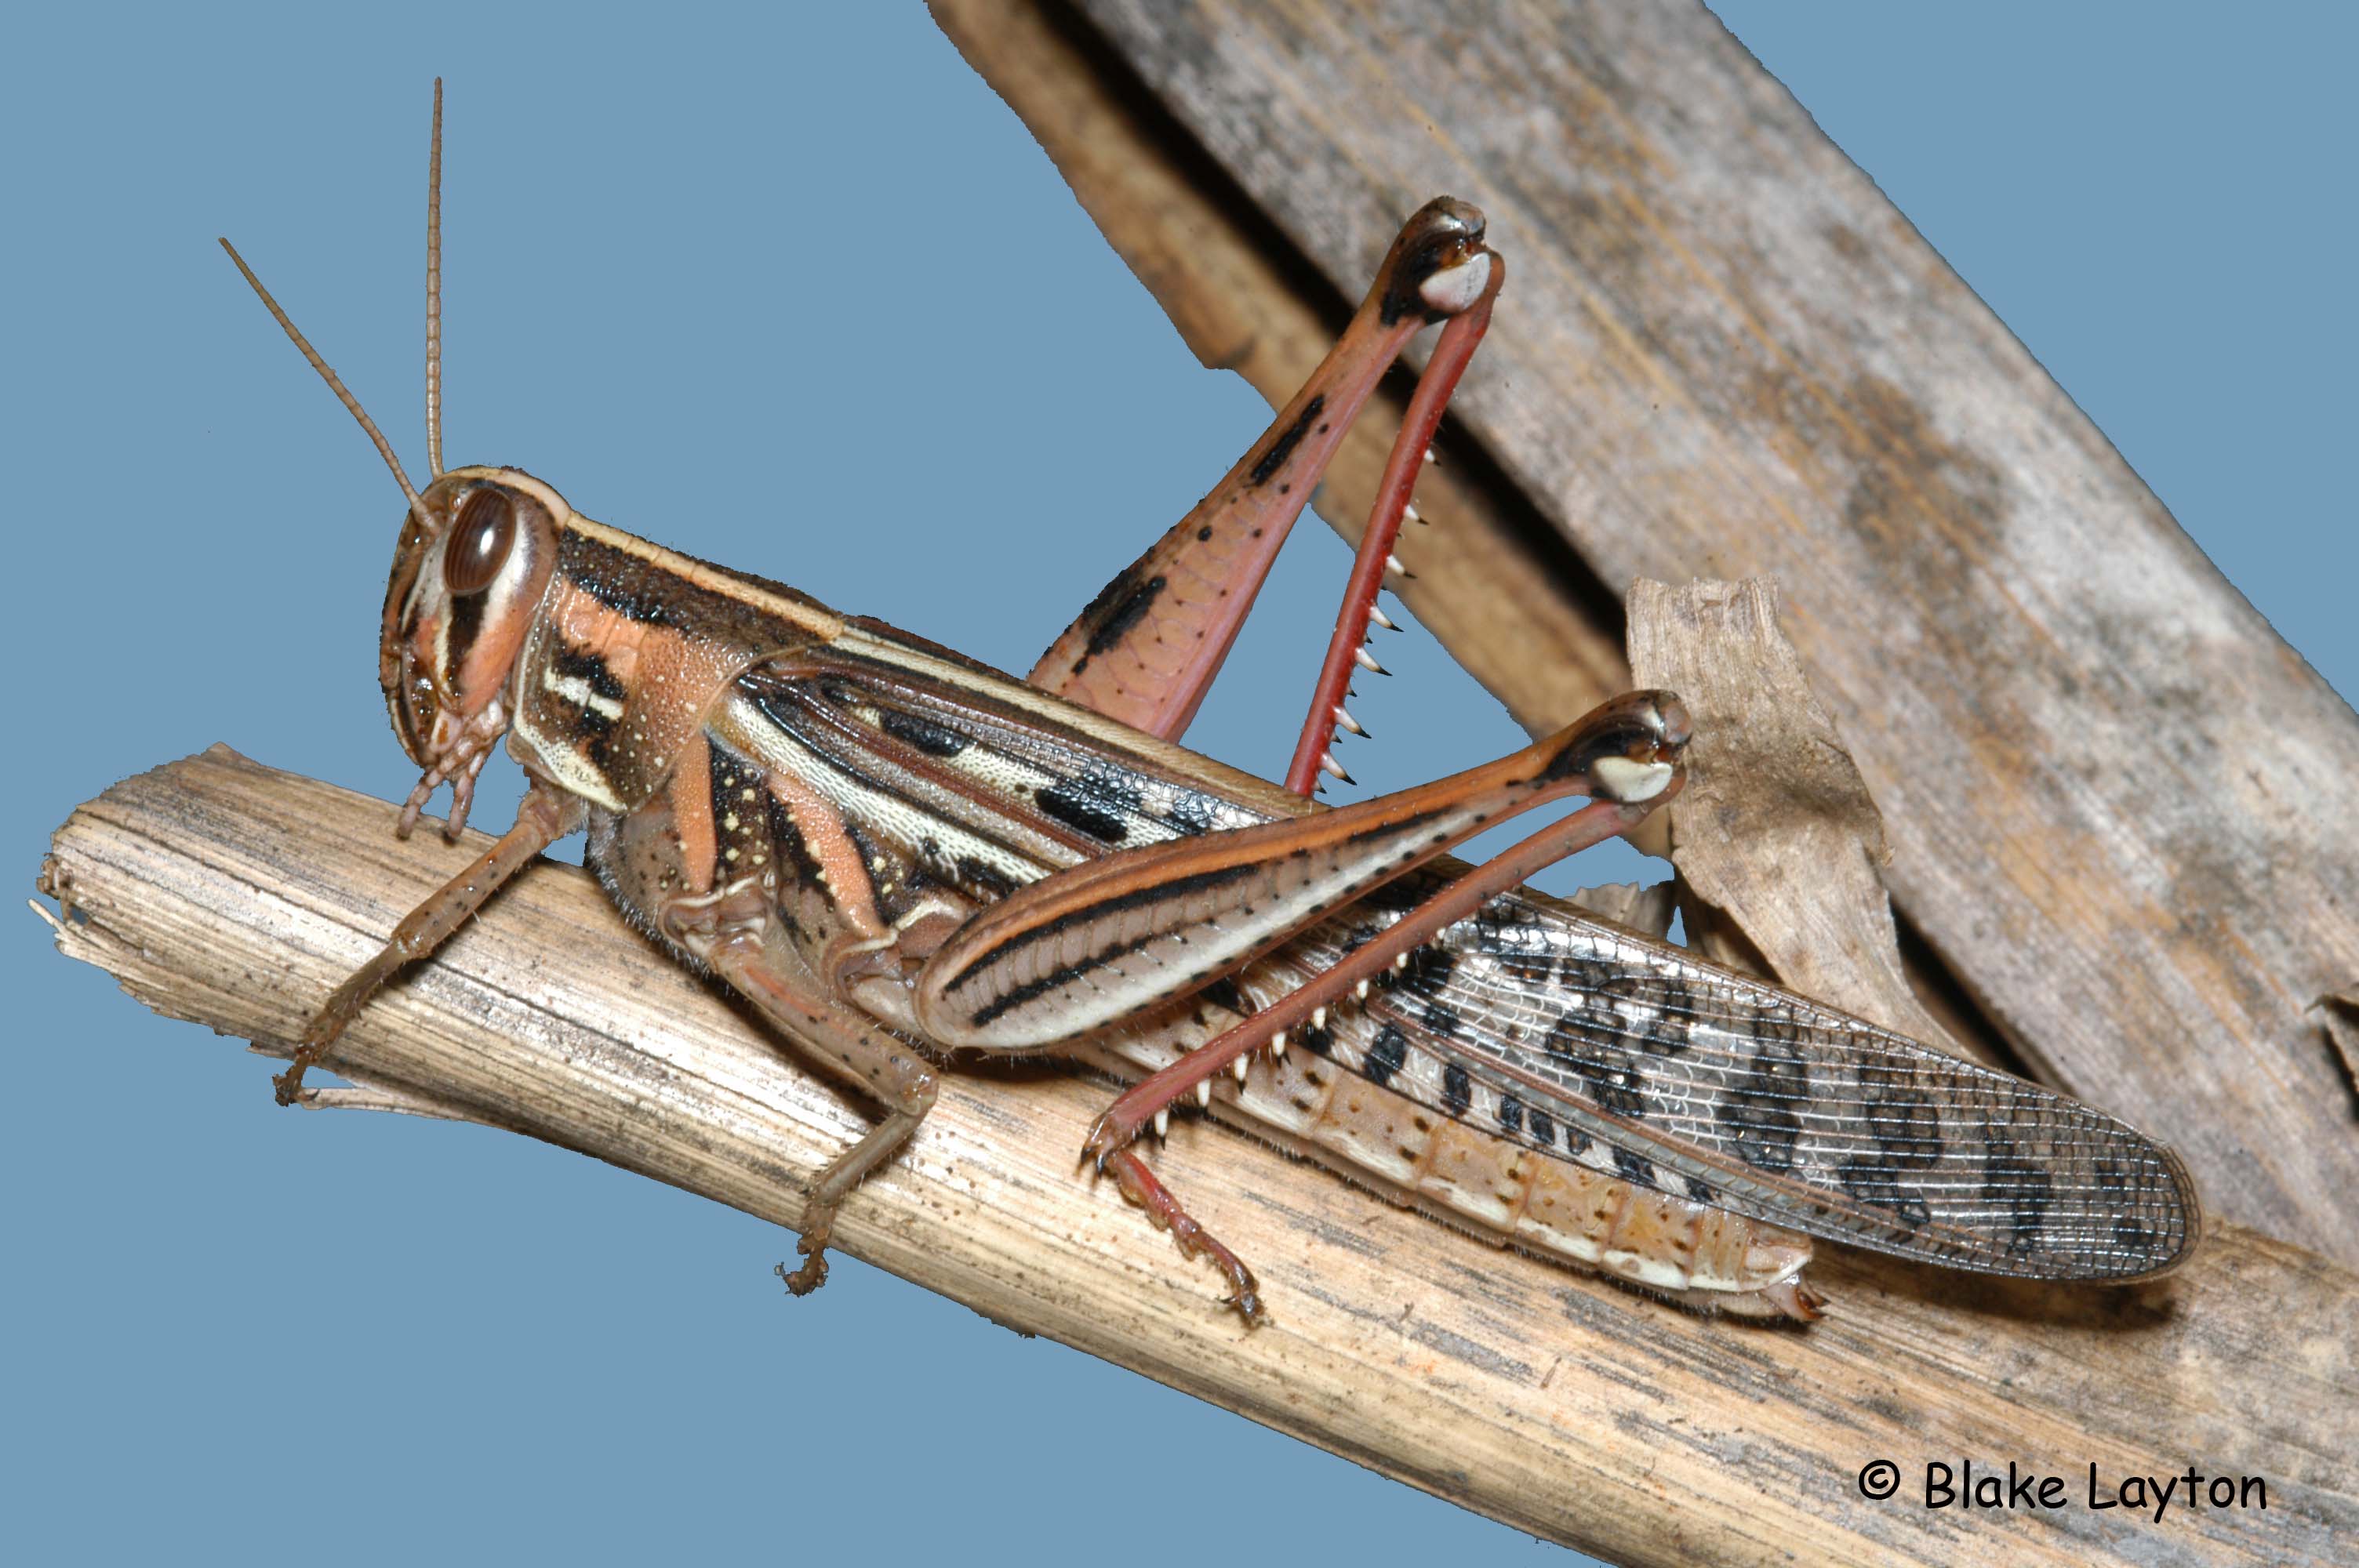 Locust. A yellow locust lands on leaf. Scientific name: Locusta